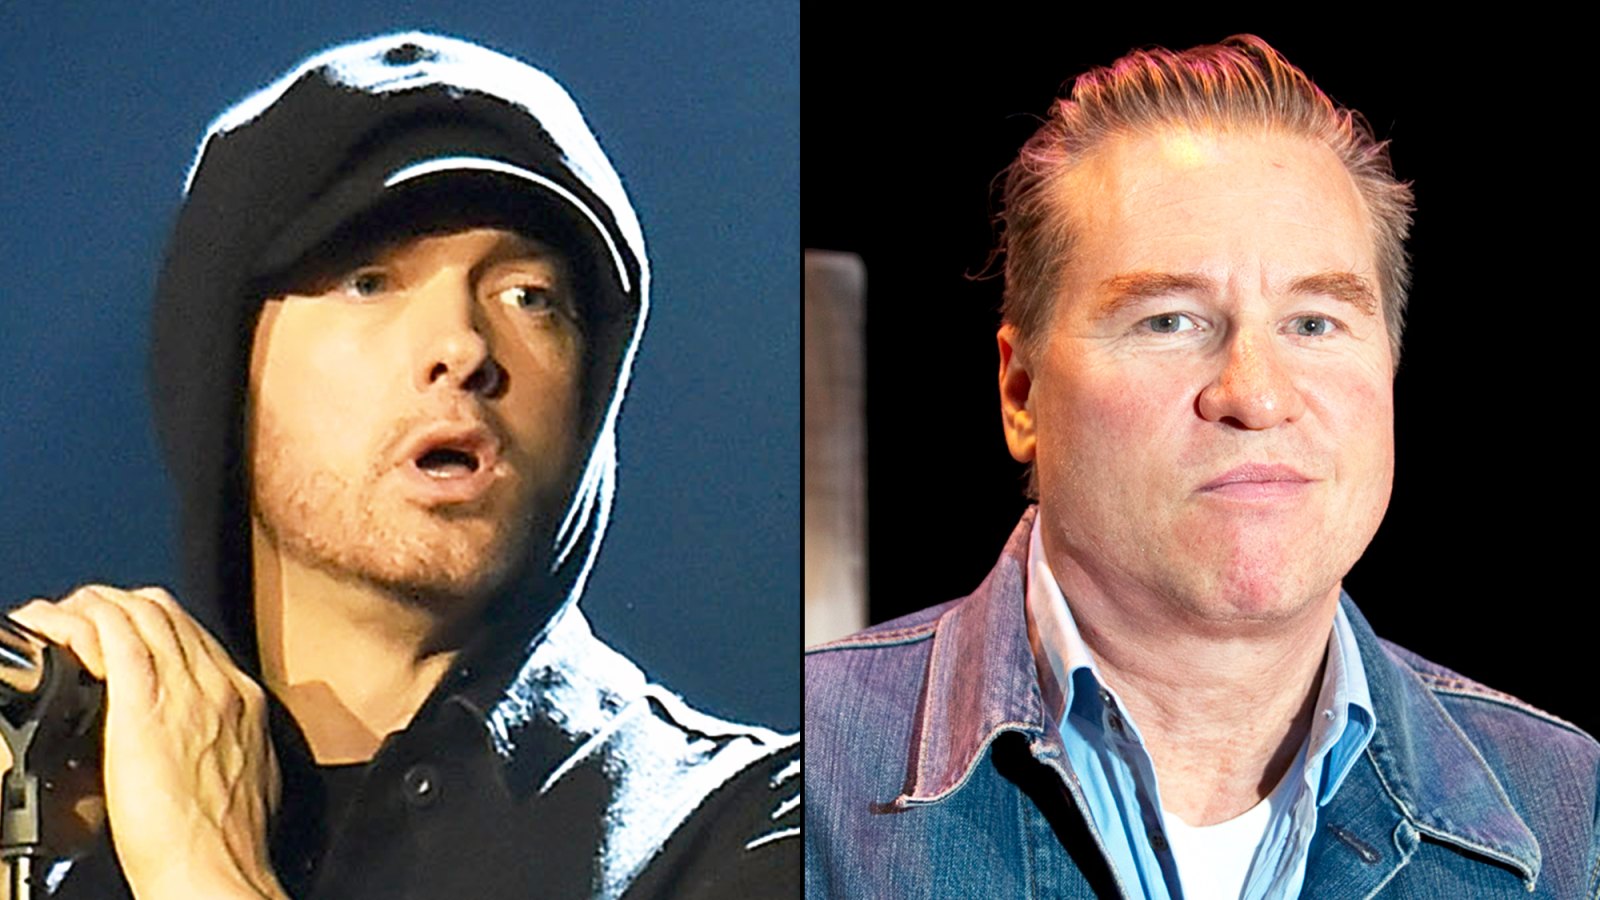 Eminem and Val Kilmer